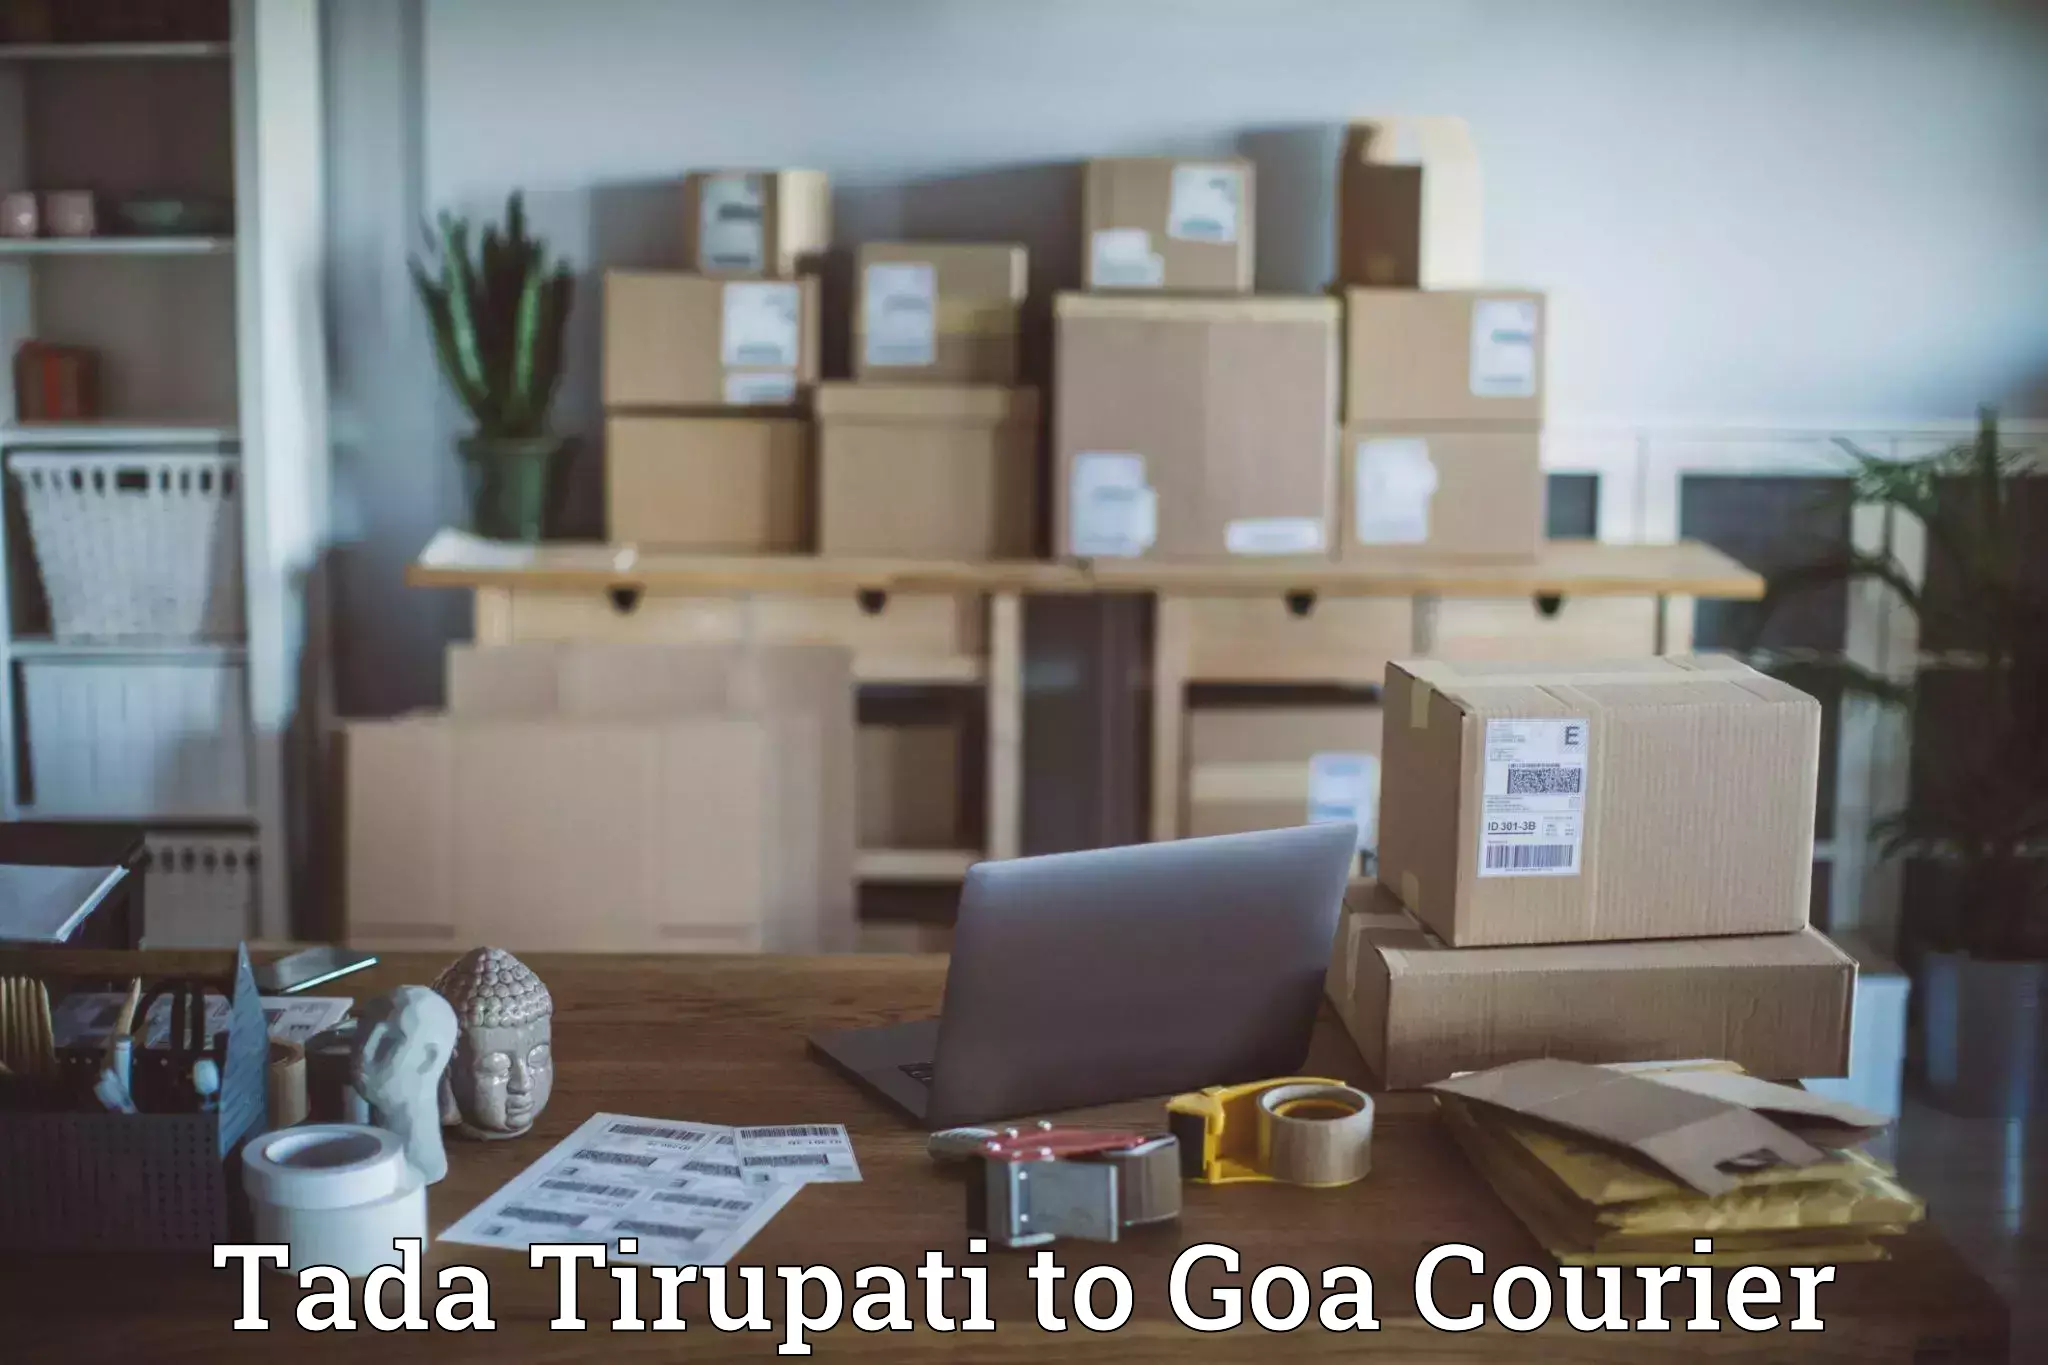 Express logistics providers Tada Tirupati to South Goa